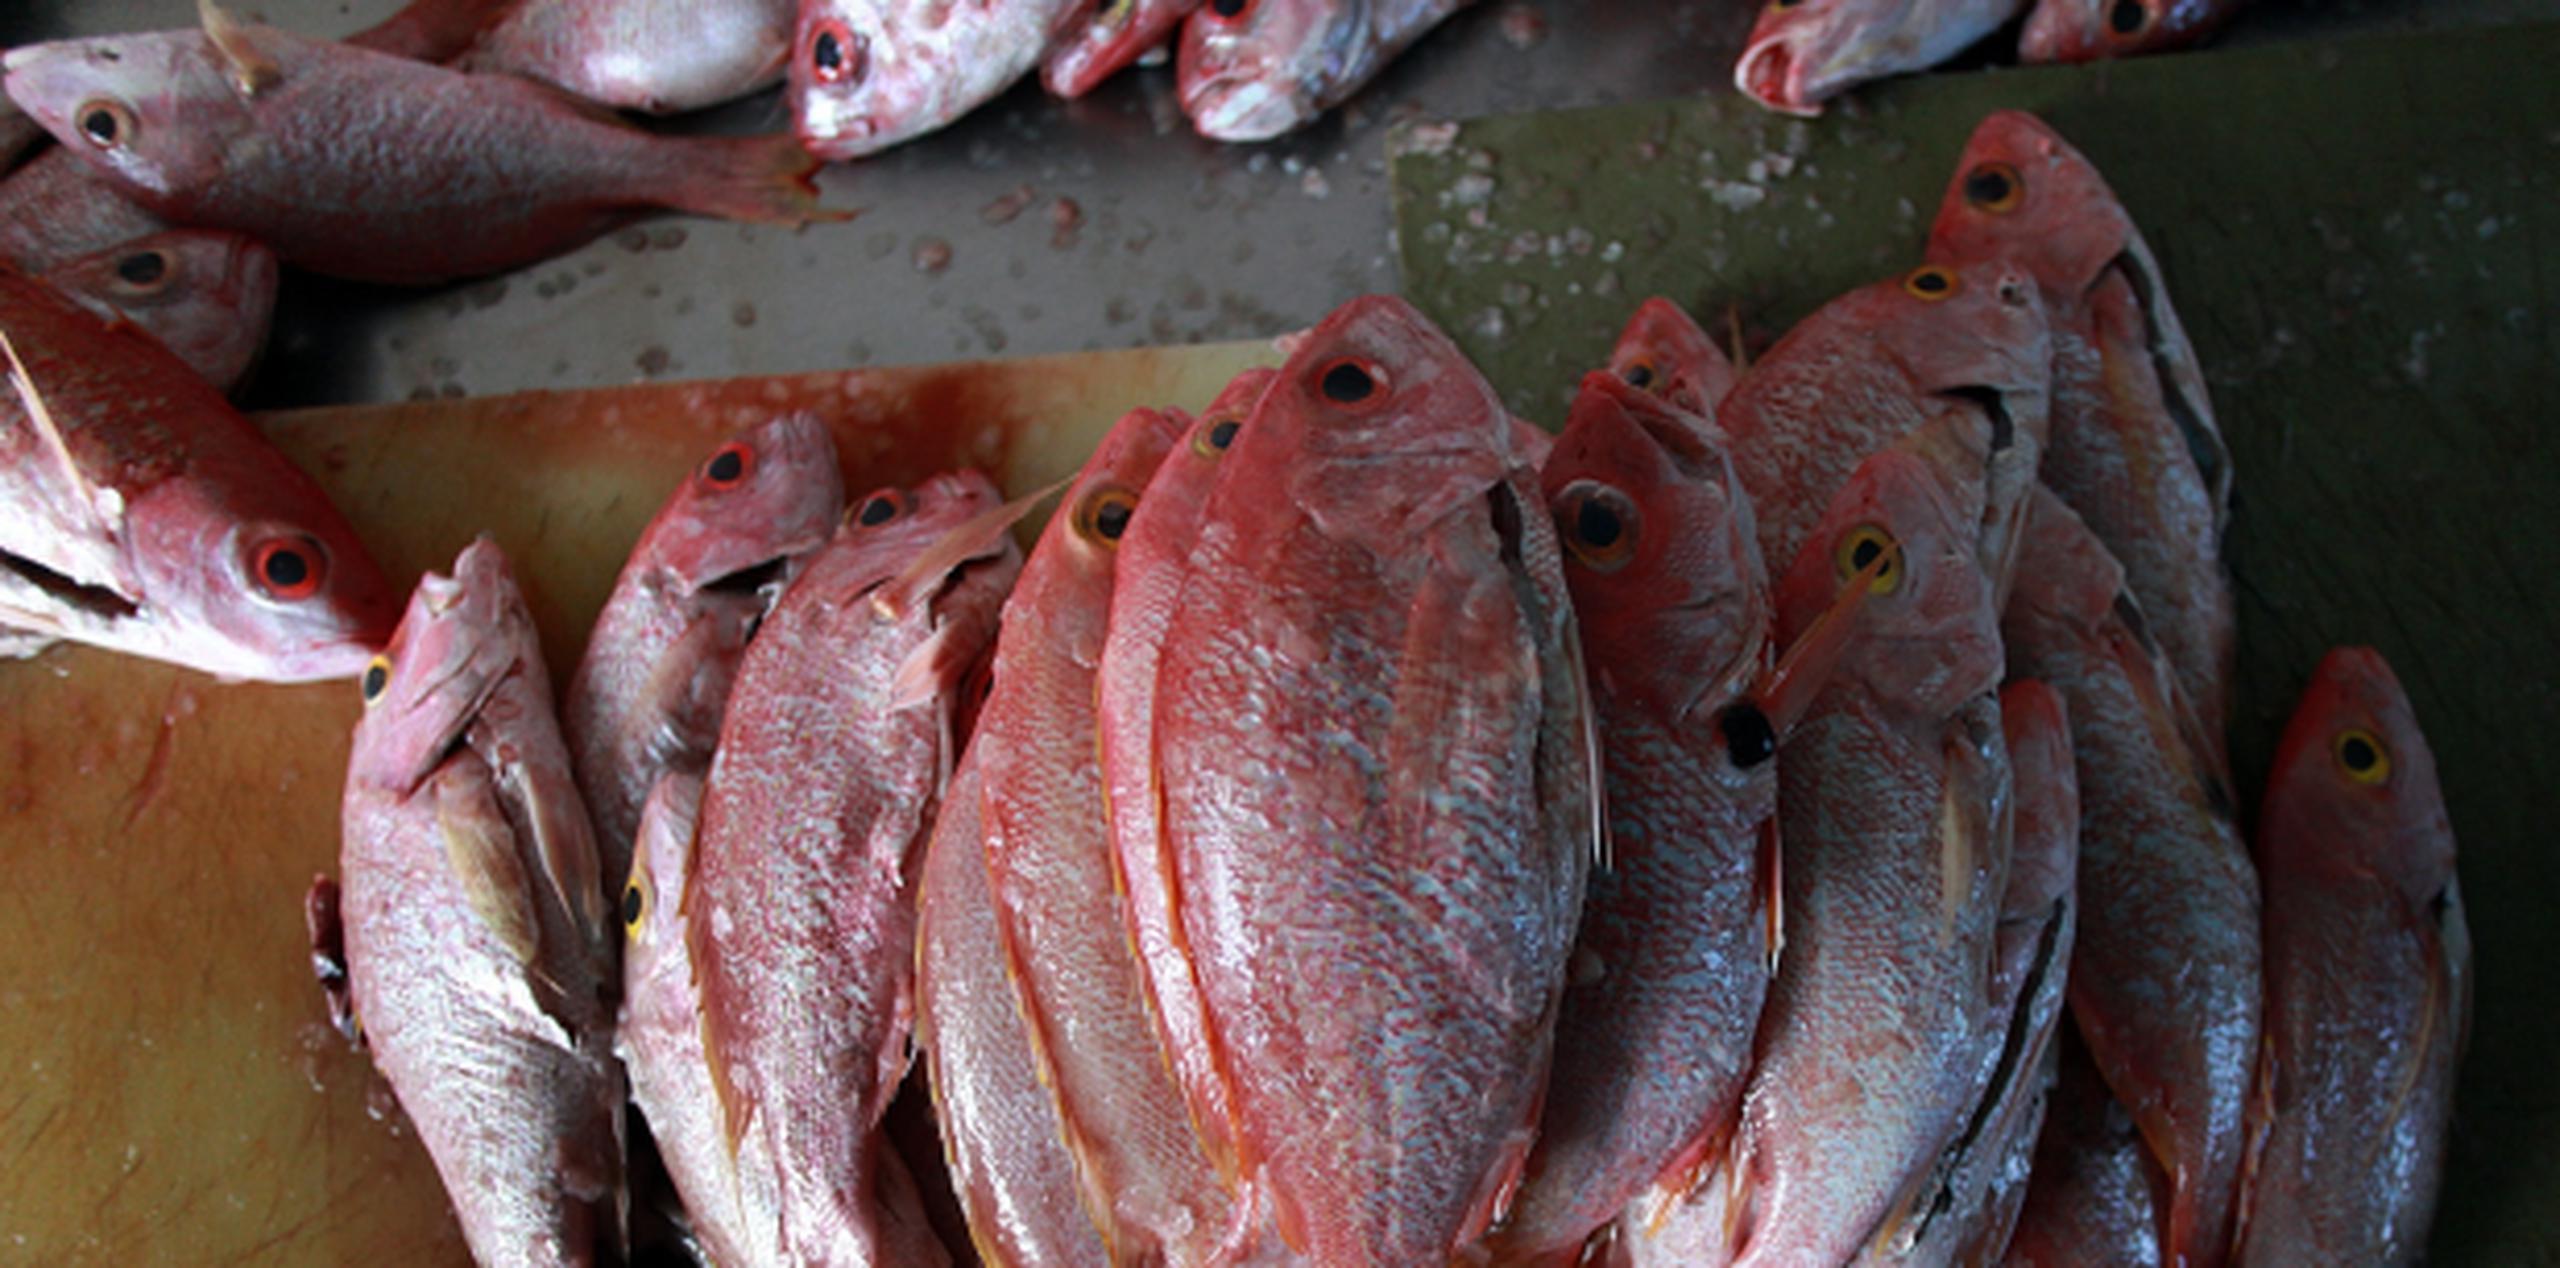 Los científicos observaron que el pescado expone frecuentemente a los seres humanos a contaminantes orgánicos persistentes. (Archivo)